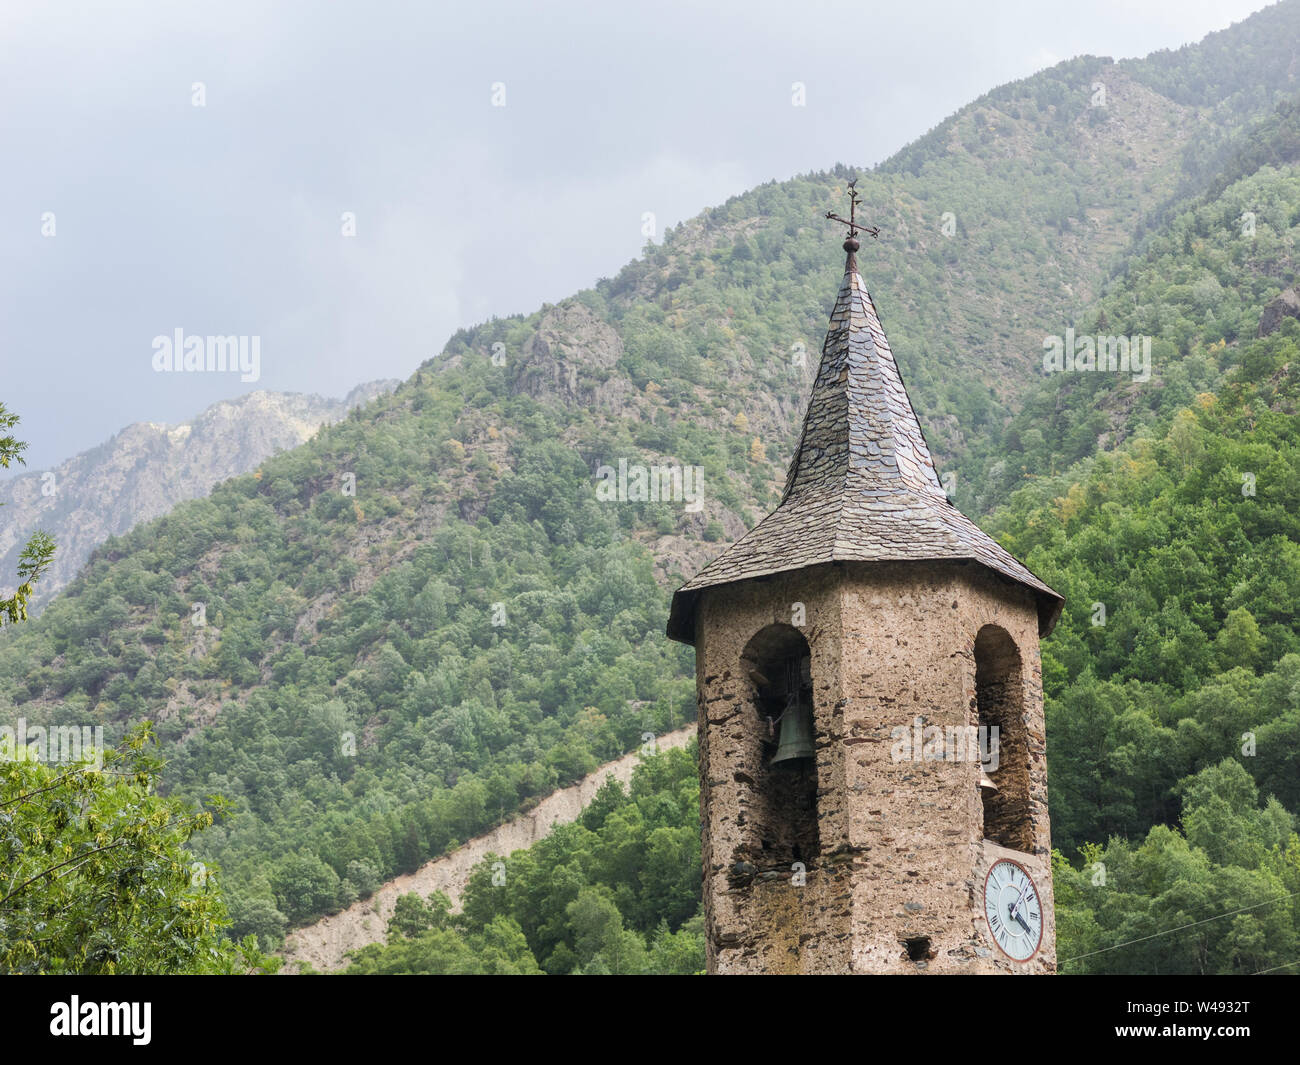 Glockenturm der Kirche. Kleine mittelalterliche Stadt von Tavascan, Pallars Sobira Region. Katalanischen Pyrenäen. Katalonien, Spanien. Stockfoto